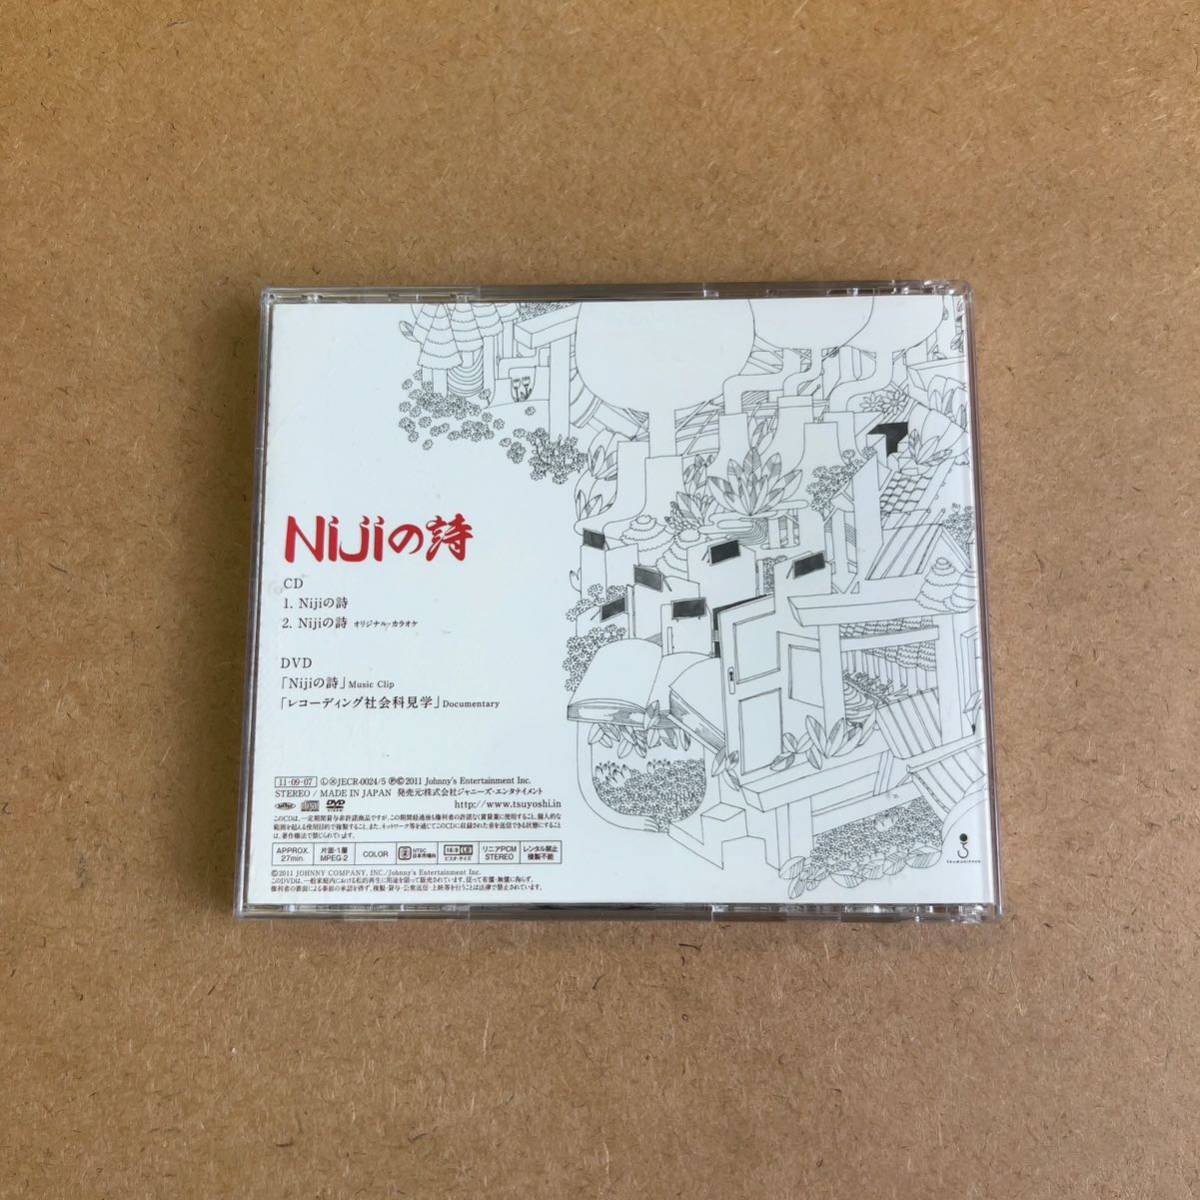  бесплатная доставка * Doumoto Tsuyoshi [Niji. поэзия ] первый раз ограничение запись CD+DVD* прекрасный товар *KinKi Kids*316